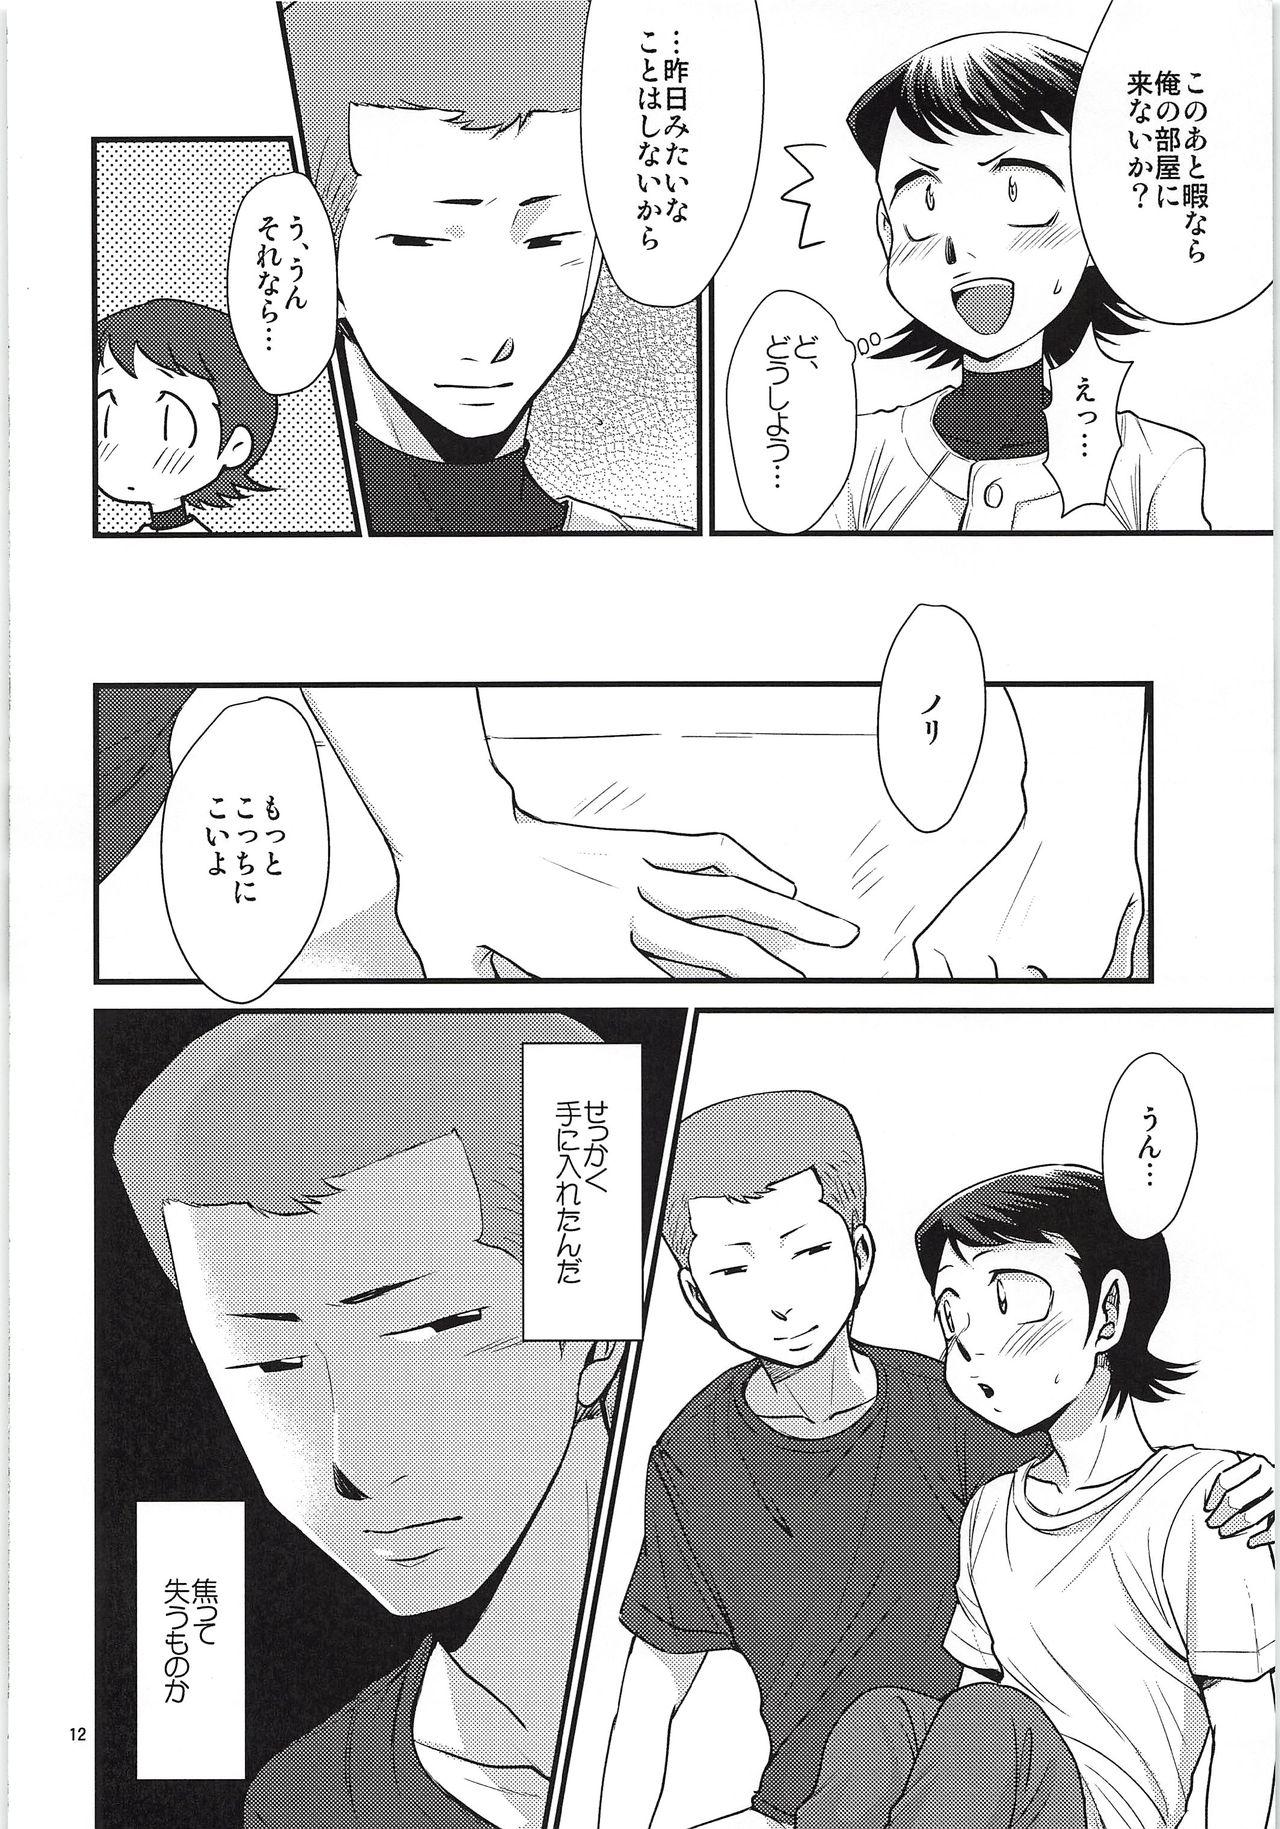 Lover Tsukiatte 3 Nichimenanoni Kareshi ga Guigui Semetekuru Ken - Daiya no ace Juicy - Page 11